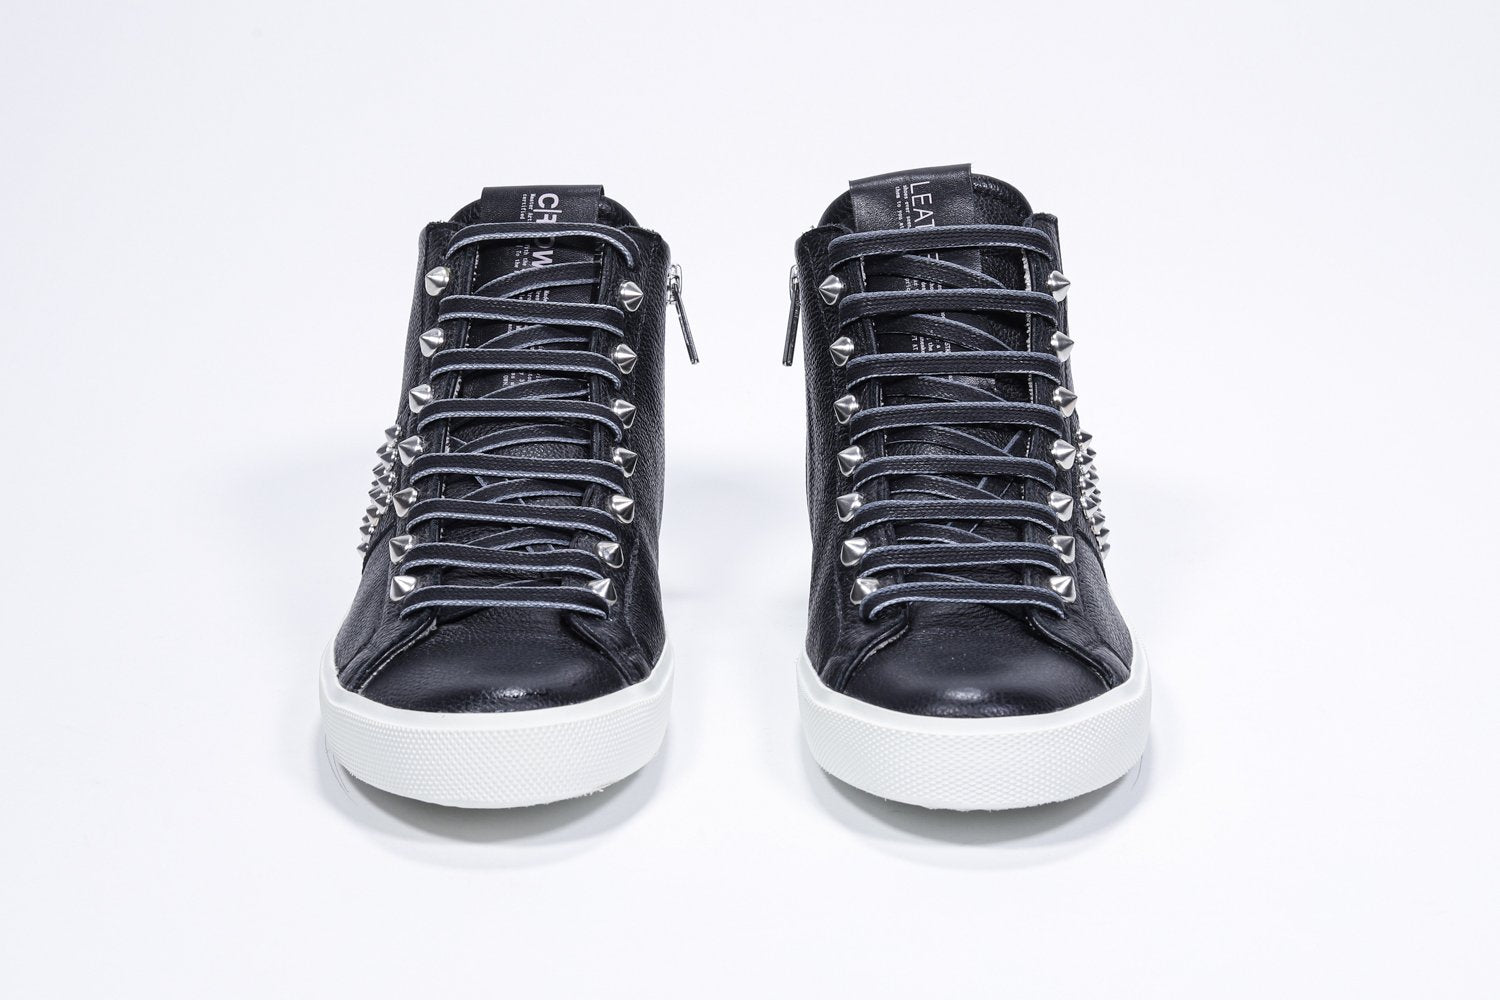 Vue de face de la chaussure de sport noire sneaker. Tige en cuir avec clous, fermeture à glissière intérieure et semelle en caoutchouc blanc.